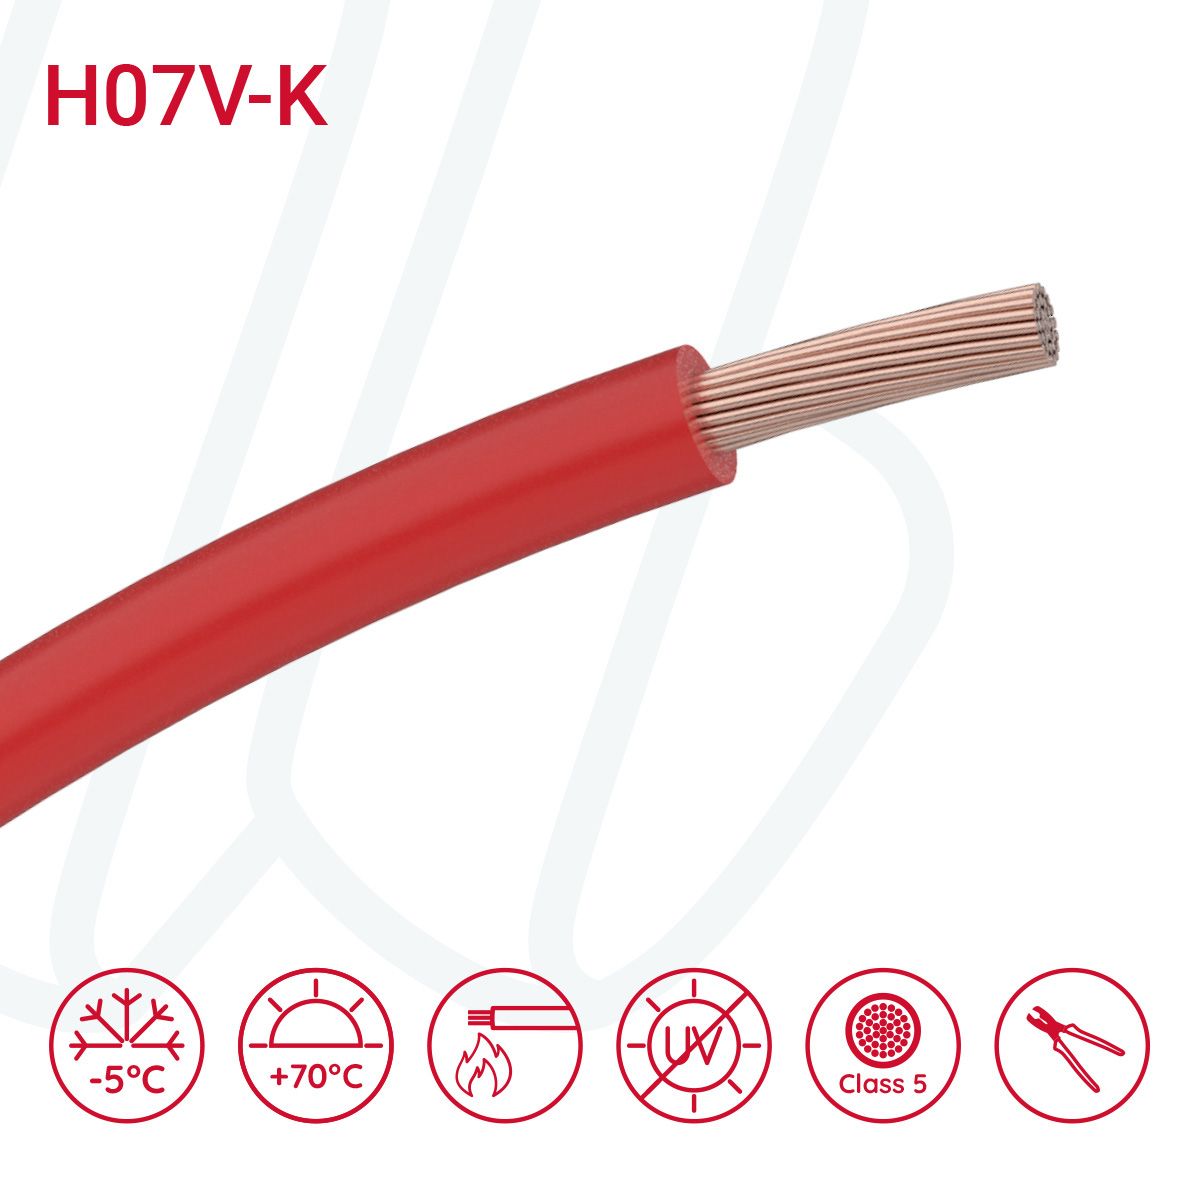 Провід монтажний гнучкий H07V-K 16 мм² червоний, 01, 16